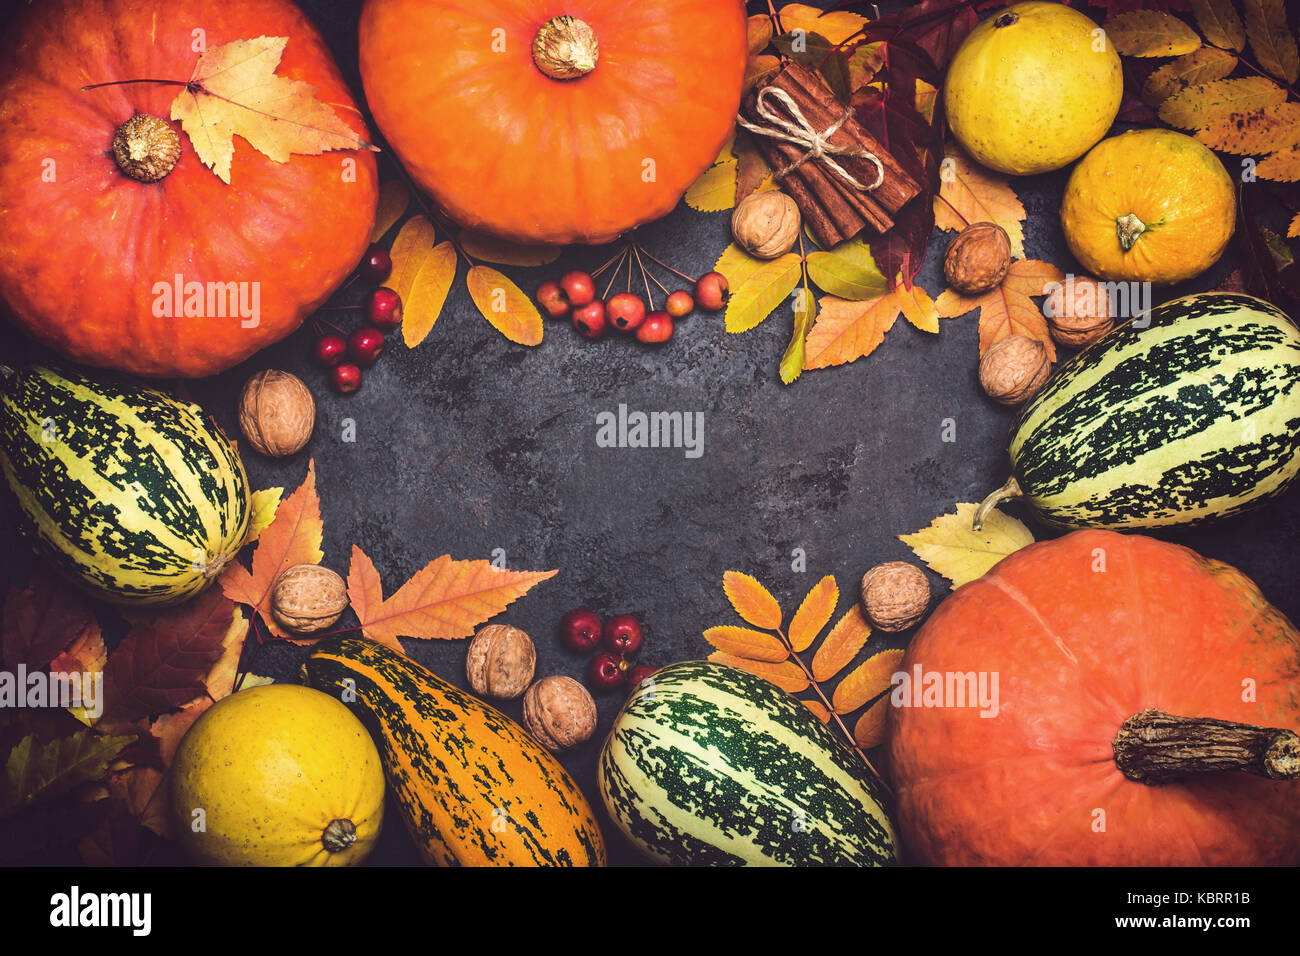 Herbst Ernte Kürbis thanksgiving Zusammensetzung auf schwarzem Hintergrund. Stockfoto